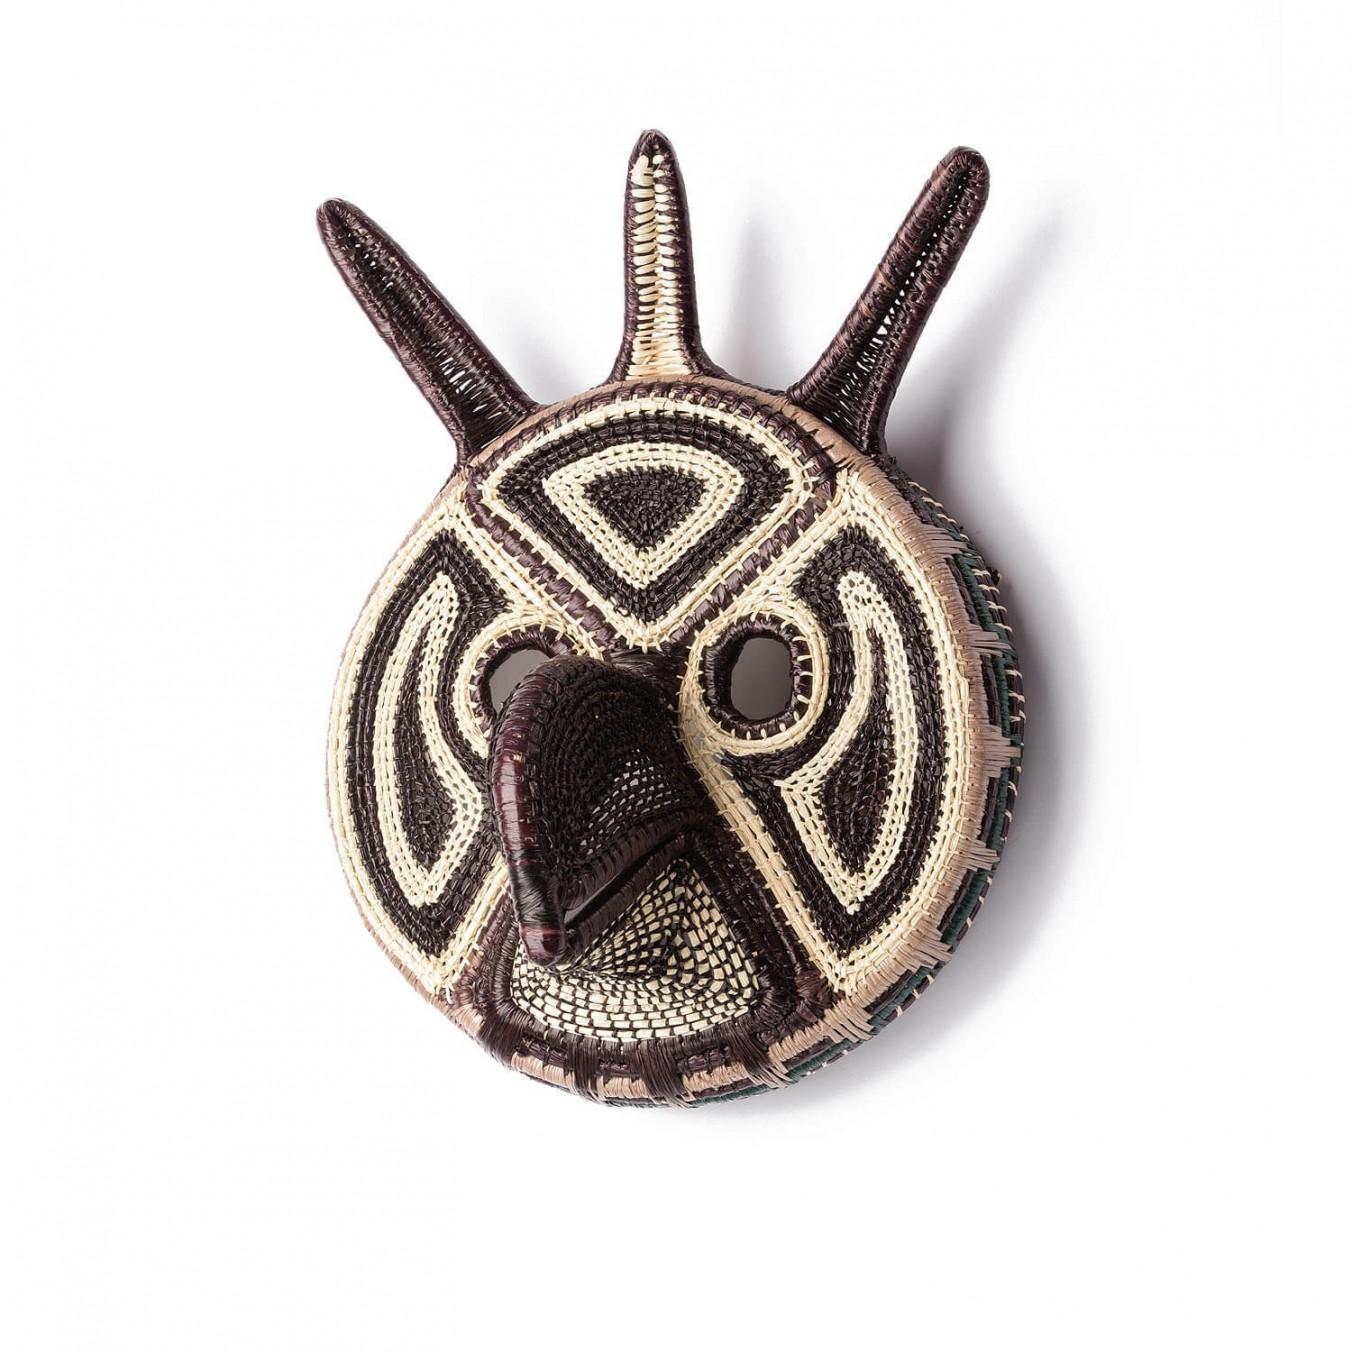 Masque décoratif tissé à la main du Panama, Mascara d'Ethic&Tropic

Objets d'art et de décoration extraordinaires, ces masques sont issus des croyances et rituels chamaniques des tribus indigènes Embera du Panama. Par l'intermédiaire des chamans,